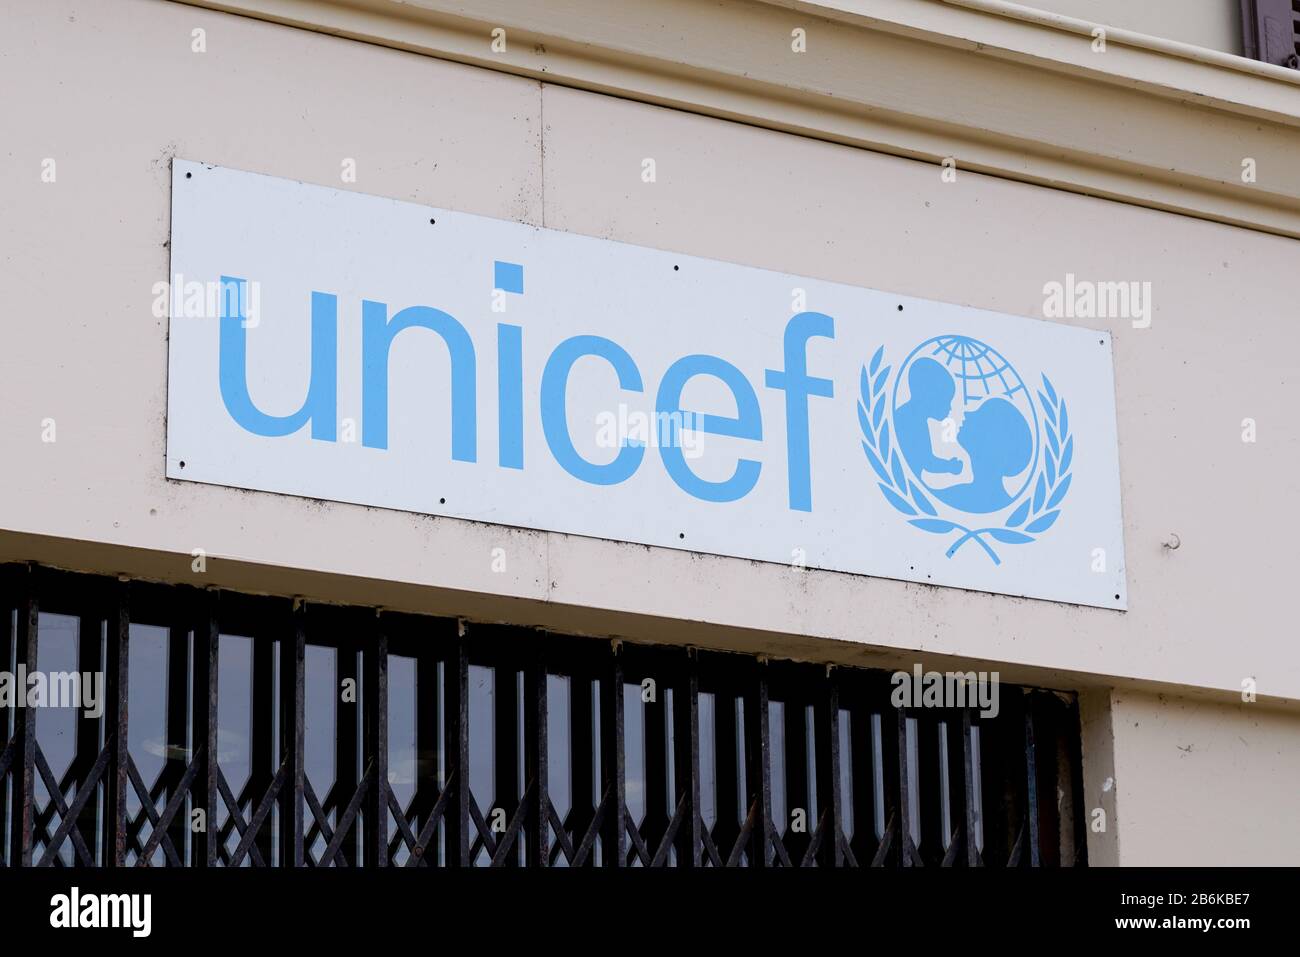 Bordeaux, Aquitanien/Frankreich - 02 21 2020: unicef unterschreibt Logo auf dem Aufbau der internationalen Organisation united Nations Children Fund Stockfoto